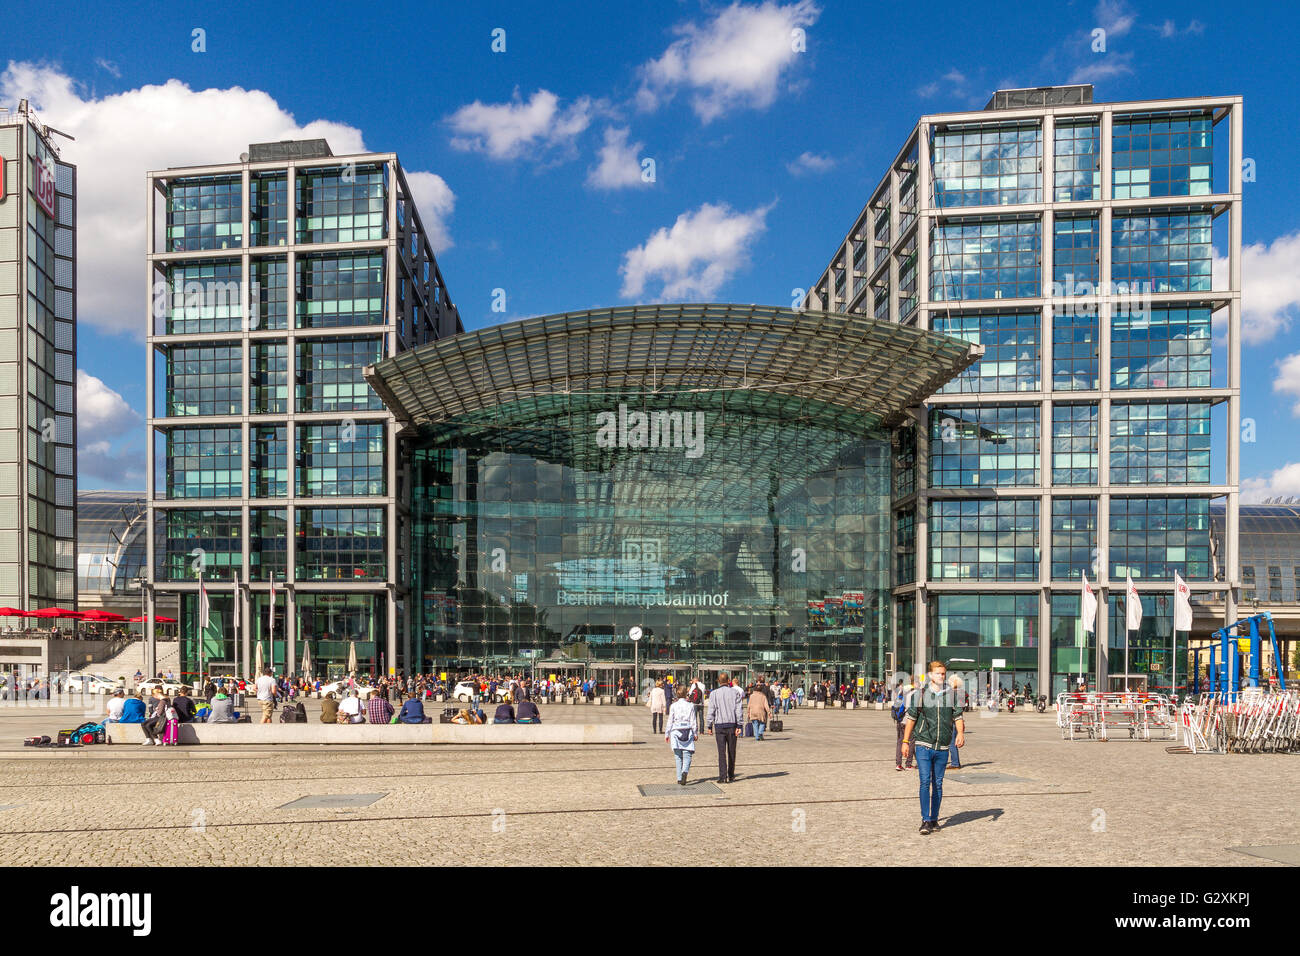 La entrada principal a la estación Hauptbahnhof de Berlín, la principal estación de tren de Berlín, Berlín, Alemania Foto de stock